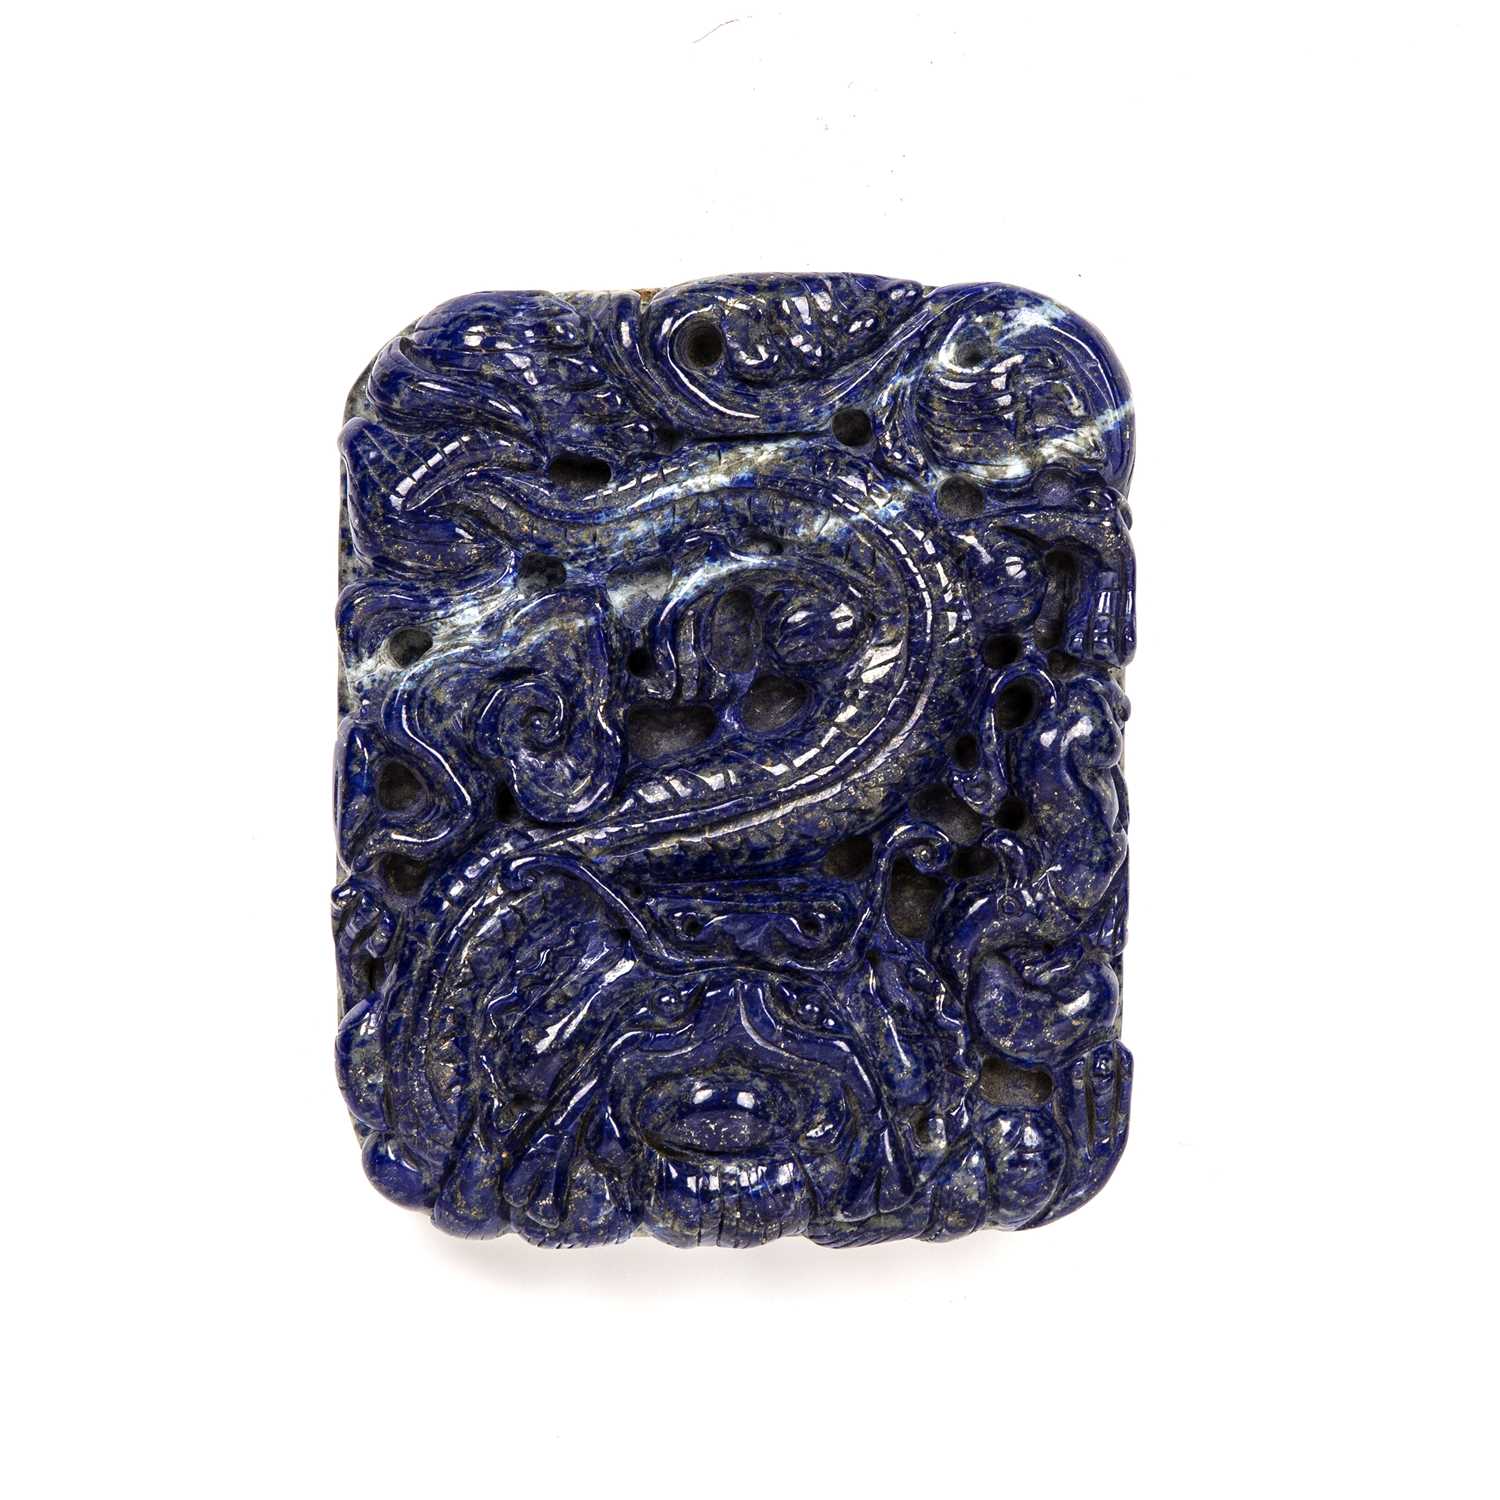 A 20th century lapis lazuli dragon plaque 9cm x 12cm Good no damages